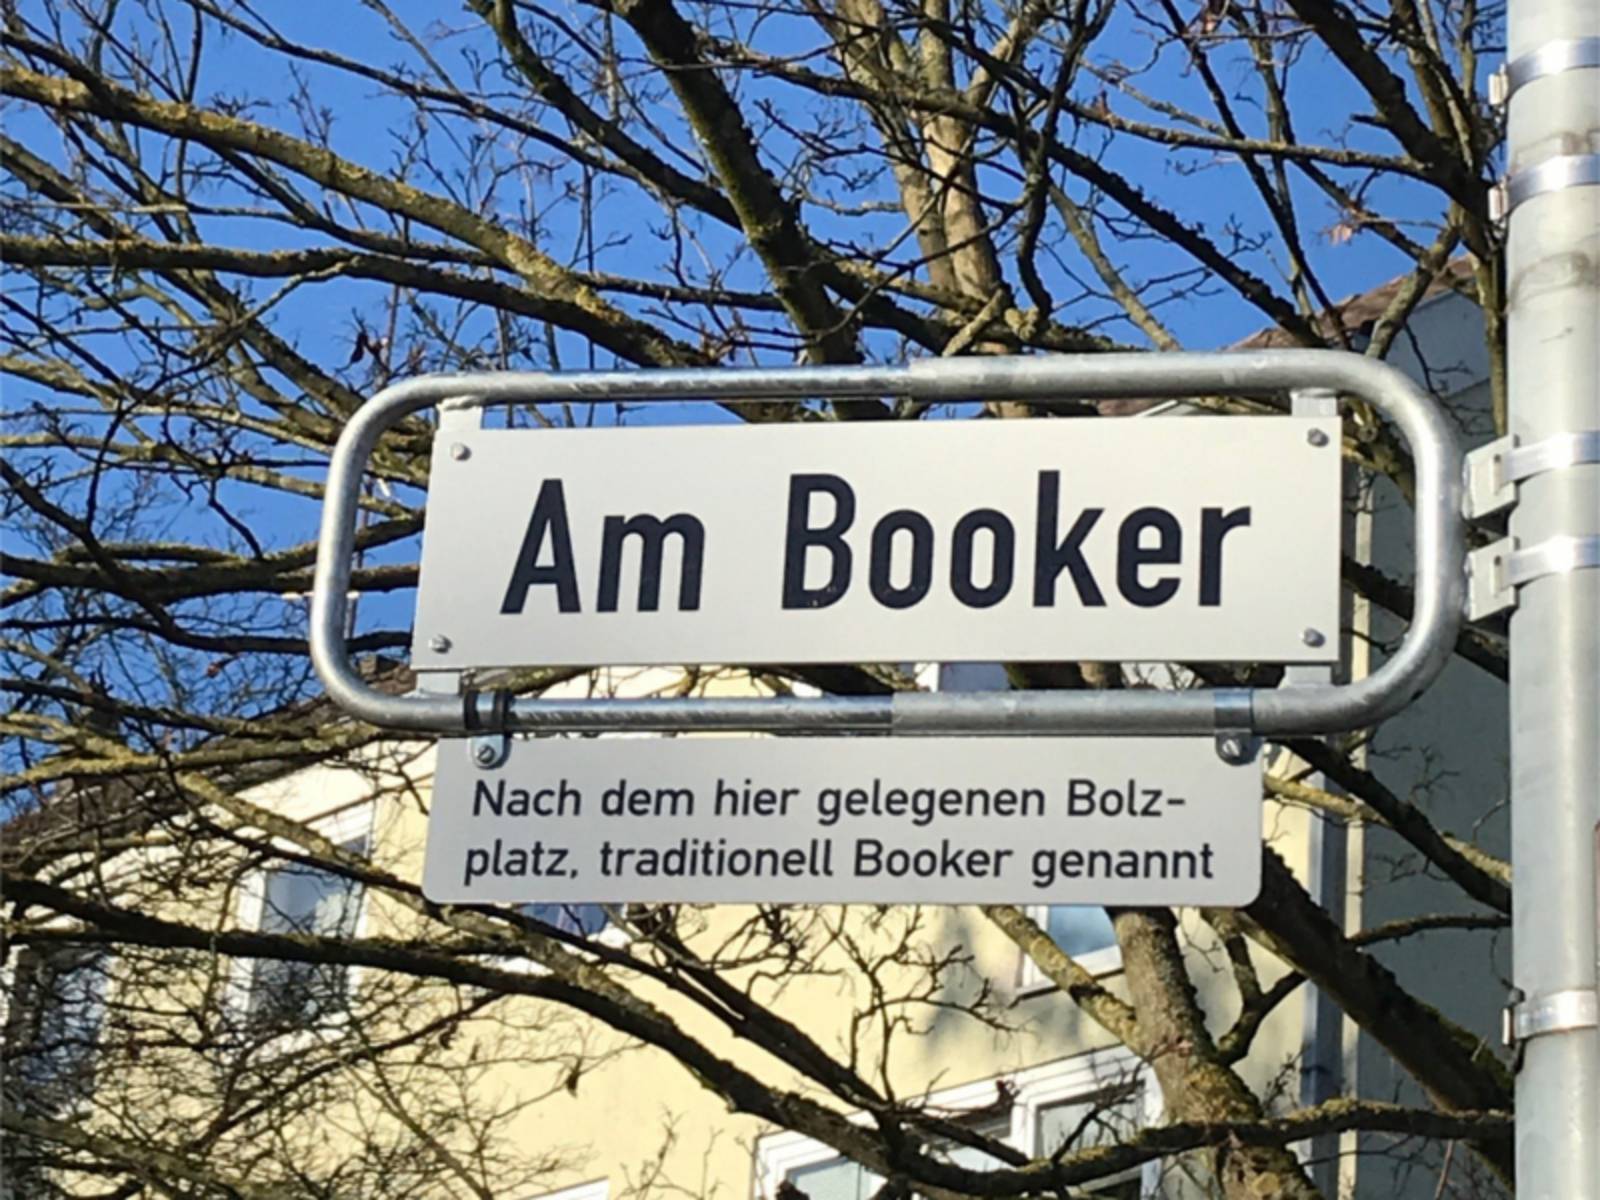 Straßenschild "Am Booker" mit Legendenschild dadrunter.